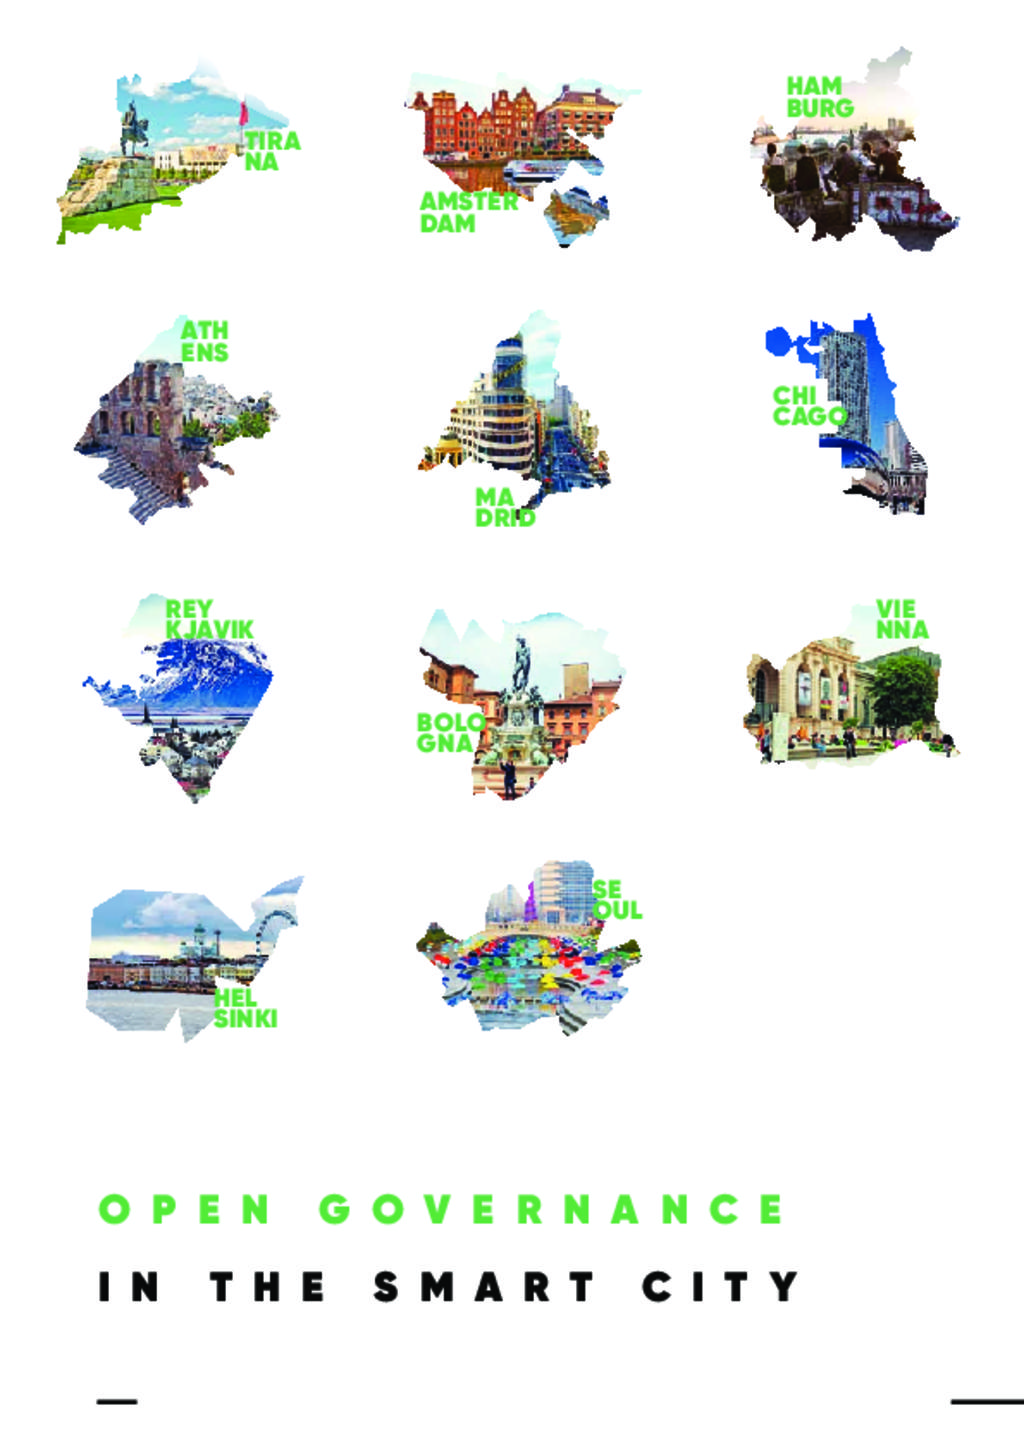 Open governance